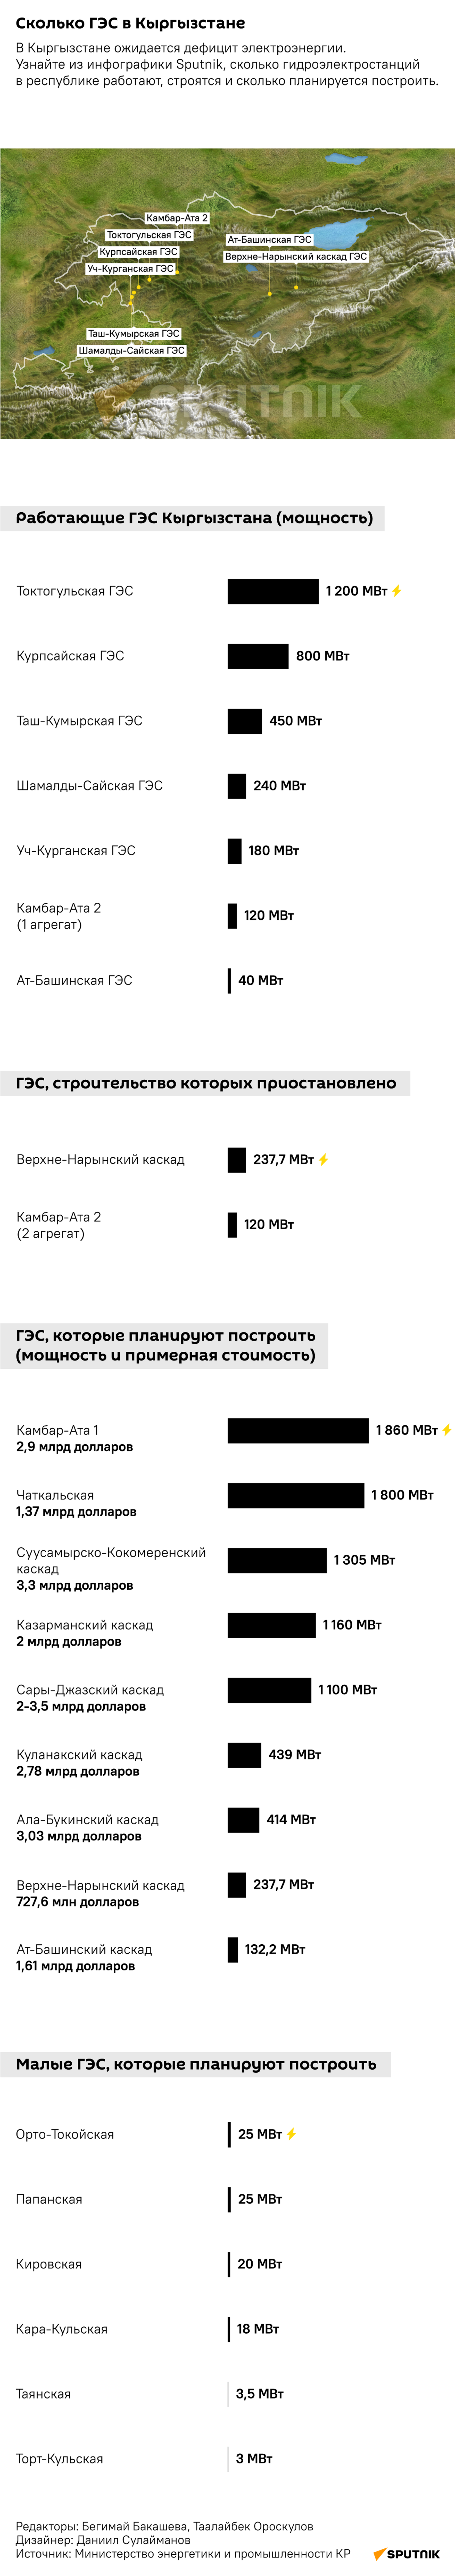 Сколько ГЭС планируют построить в Кыргызстане — инфографика - Sputnik Кыргызстан, 1920, 23.06.2021